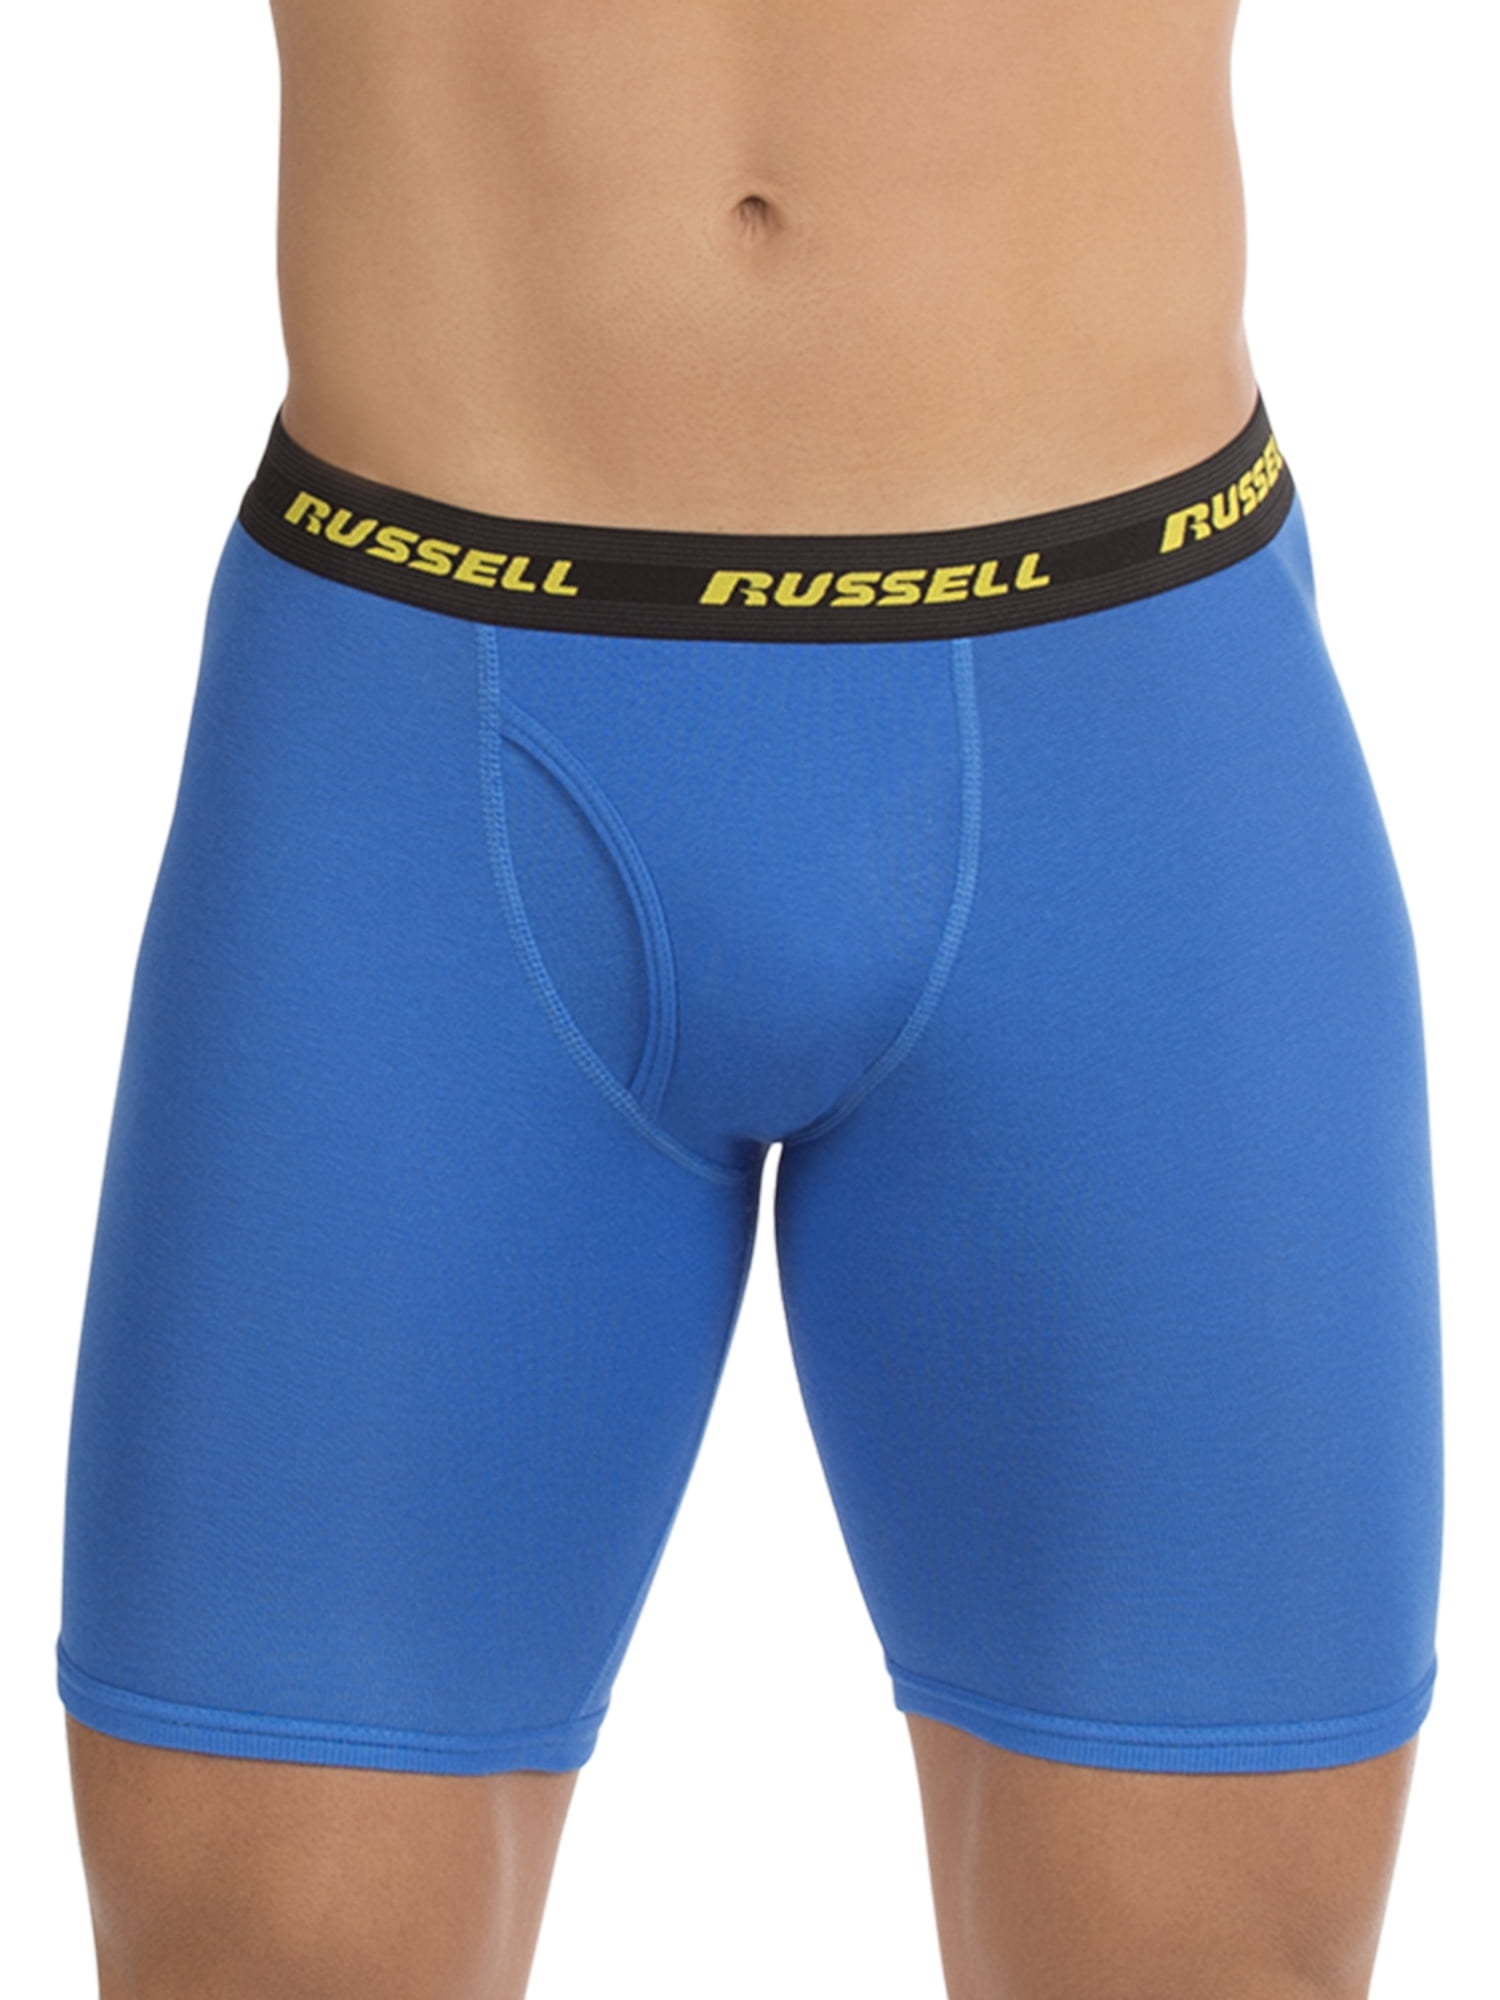 Russell Men's Comfort Performance Long Leg Boxer Briefs, 5 Pack, Sizes S-XL  - Walmart.com